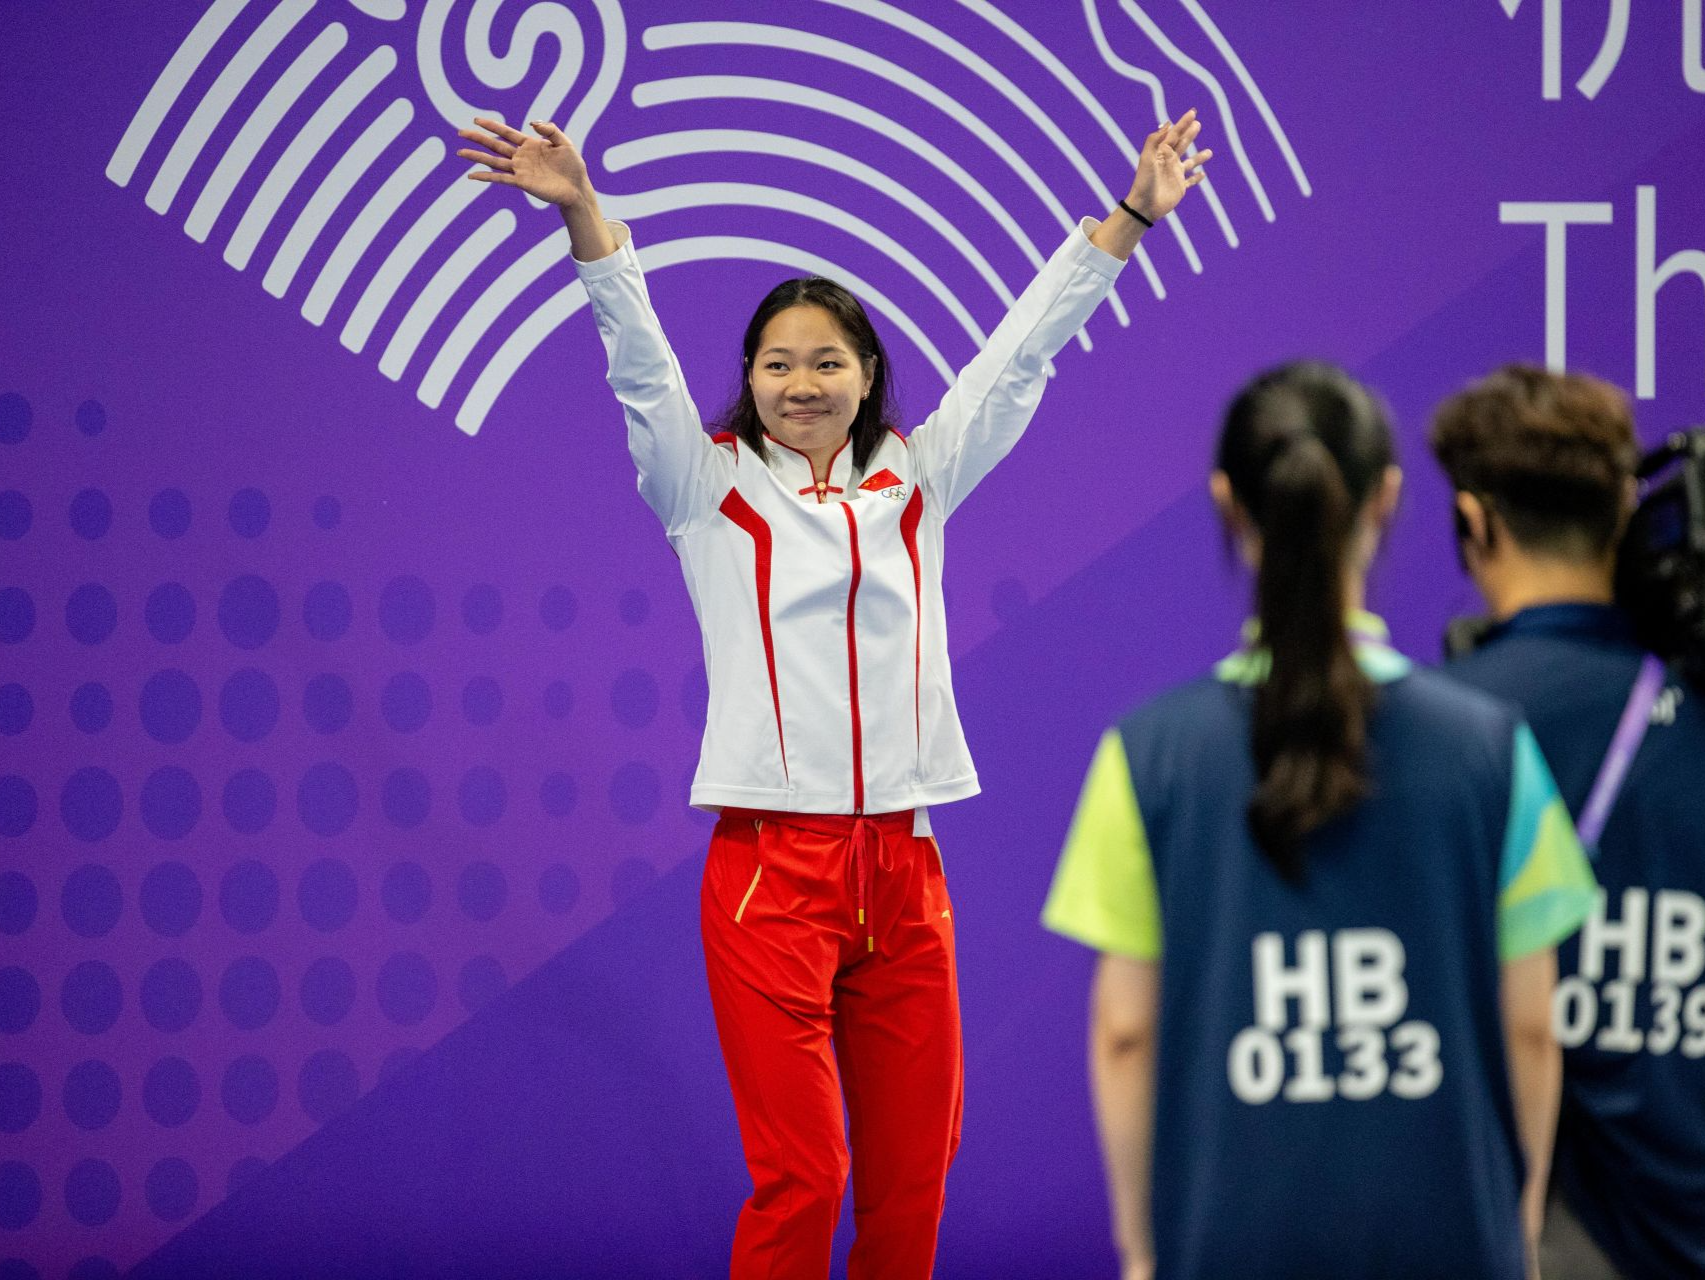 深圳选手俞李妍亚运会200米蝶泳摘银